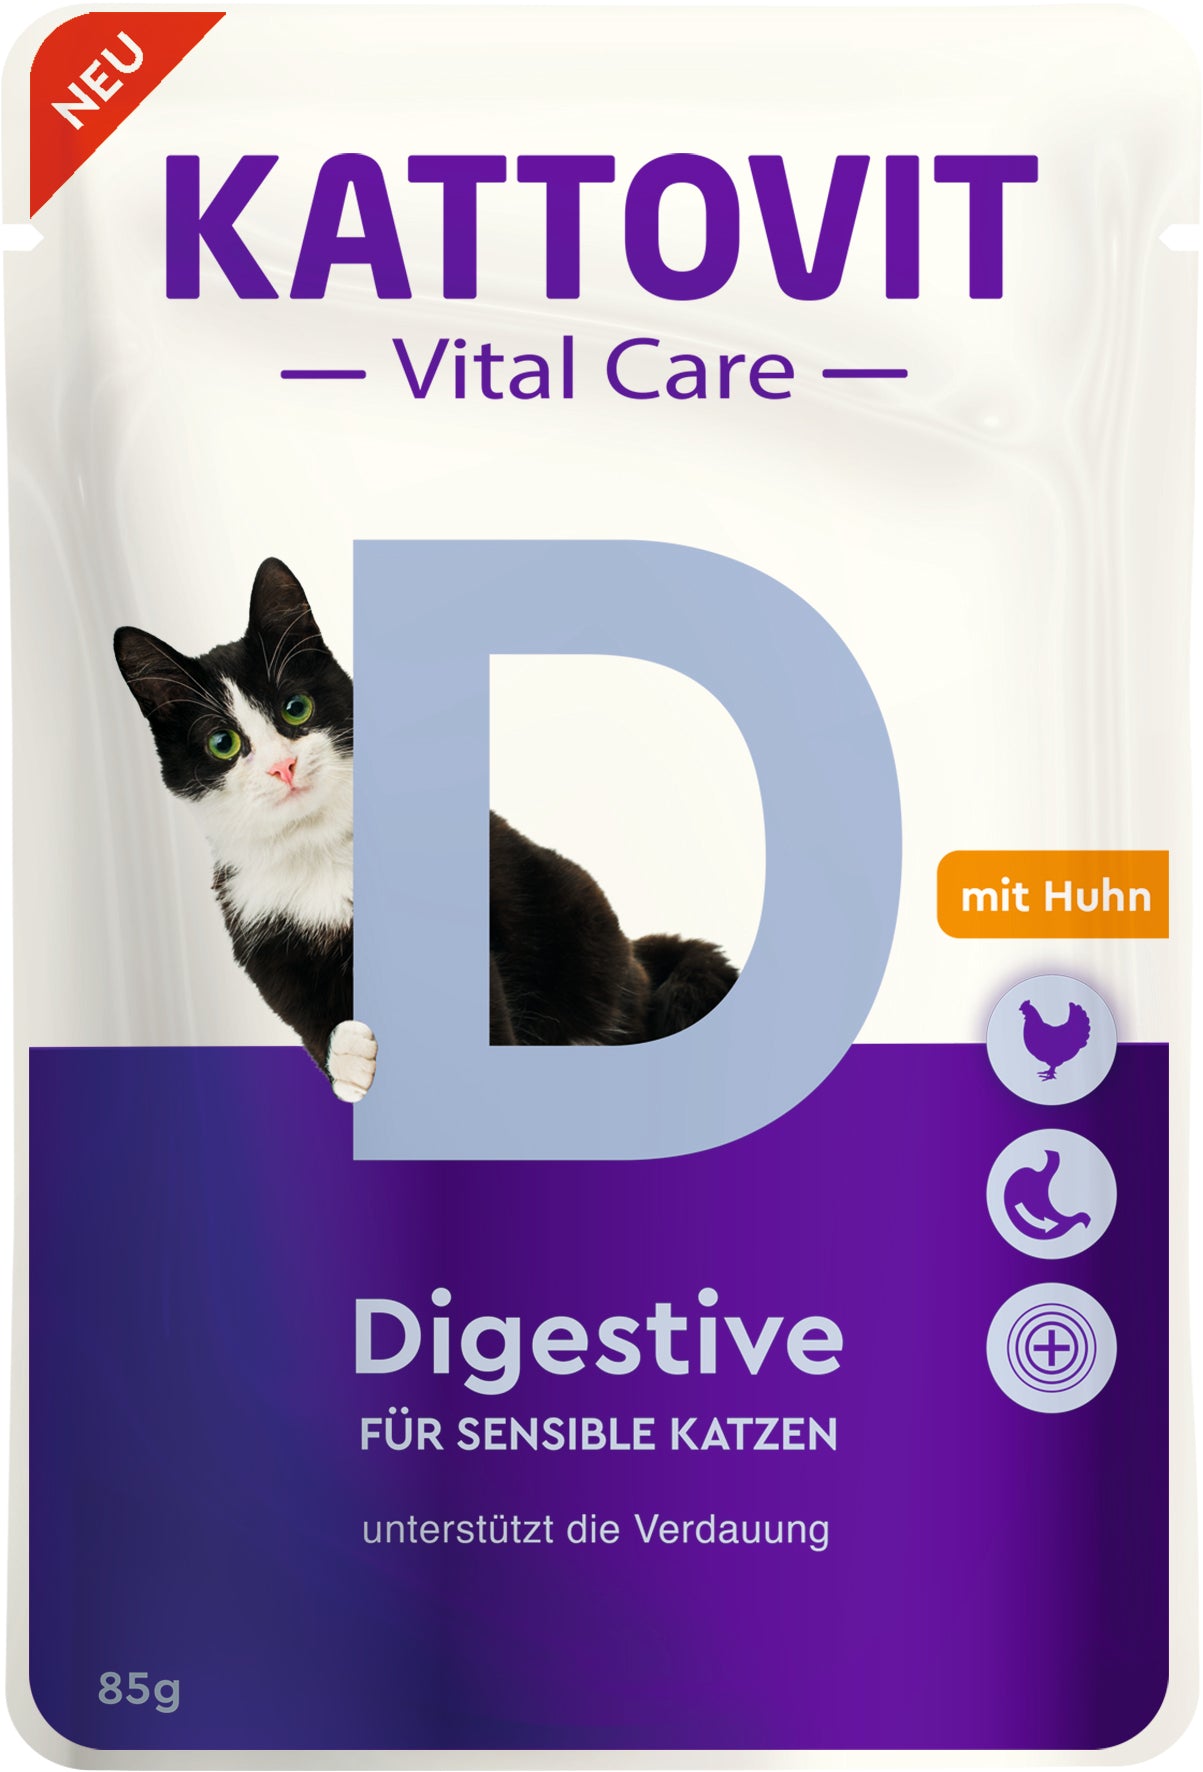 Artikel mit dem Namen Kattovit Pouchbeutel Vital Care Digestive im Shop von zoo.de , dem Onlineshop für nachhaltiges Hundefutter und Katzenfutter.